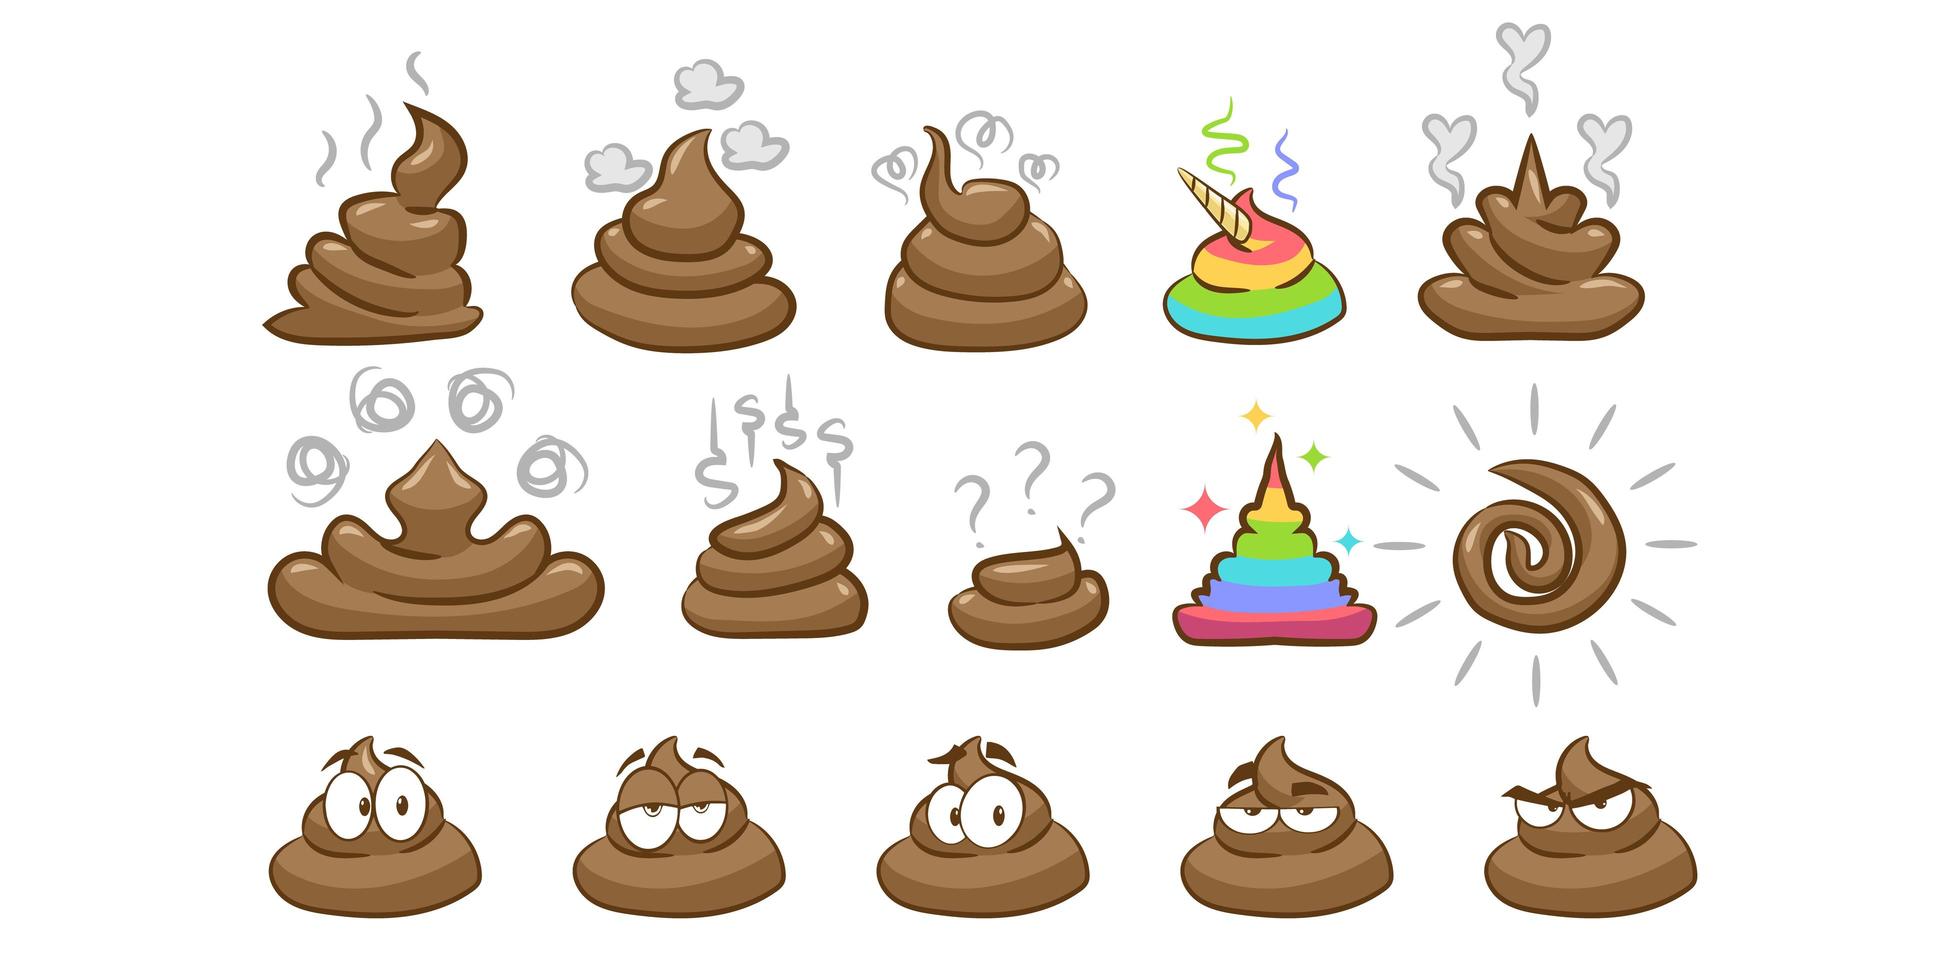 Ilustração de imagem de emoji de cocô em diferentes formas